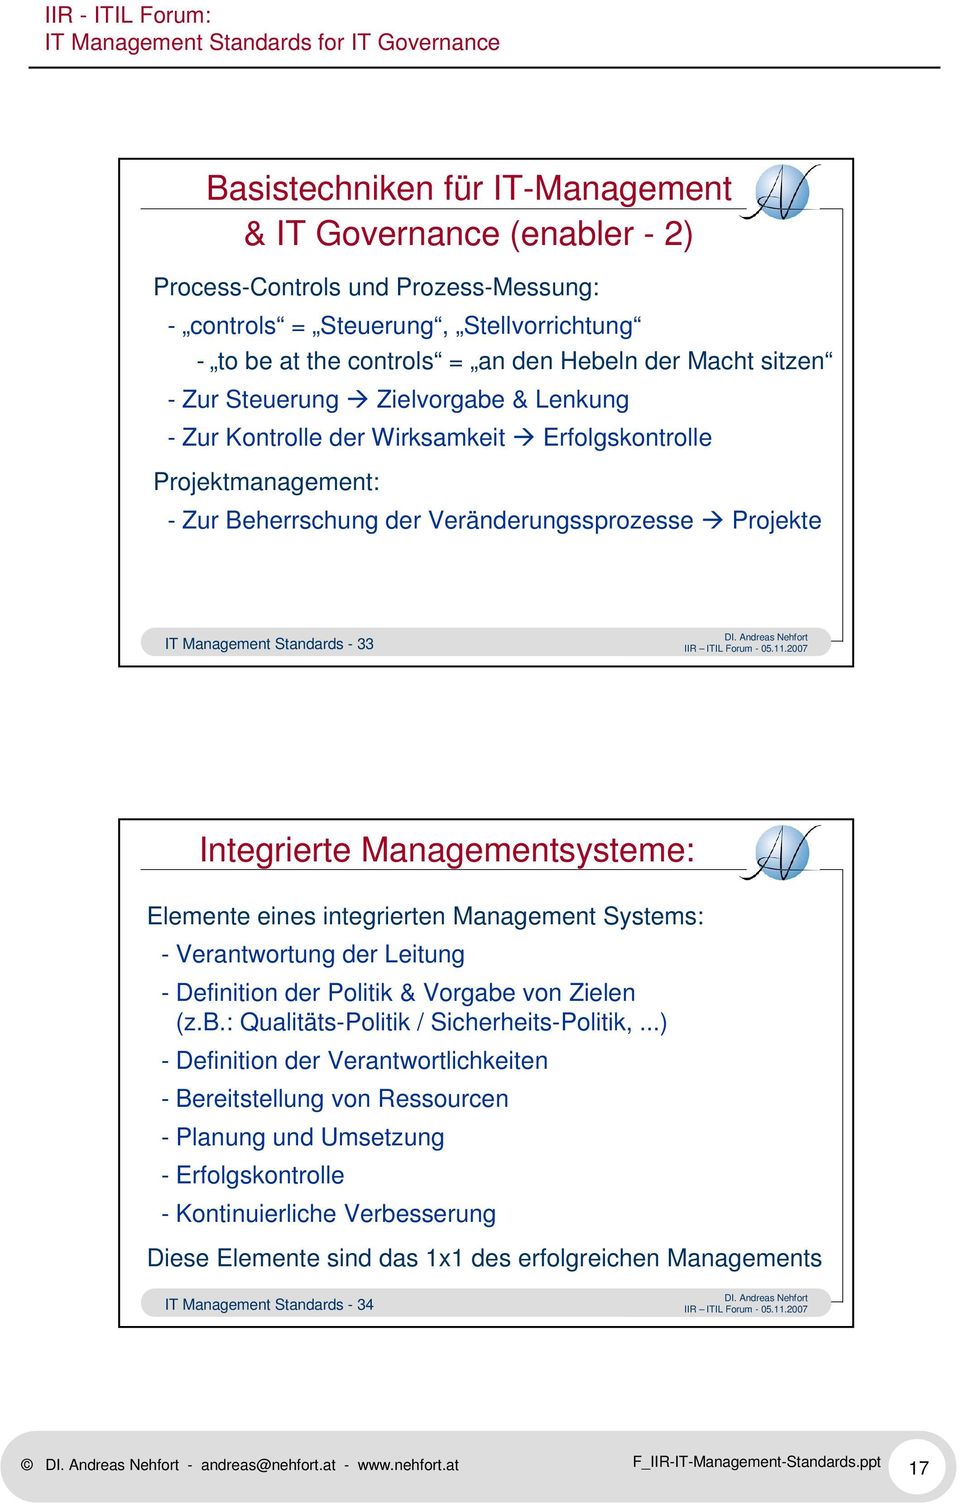 Integrierte Managementsysteme: Elemente eines integrierten Management Systems: - Verantwortung der Leitung - Definition der Politik & Vorgabe von Zielen (z.b.: Qualitäts-Politik / Sicherheits-Politik,.